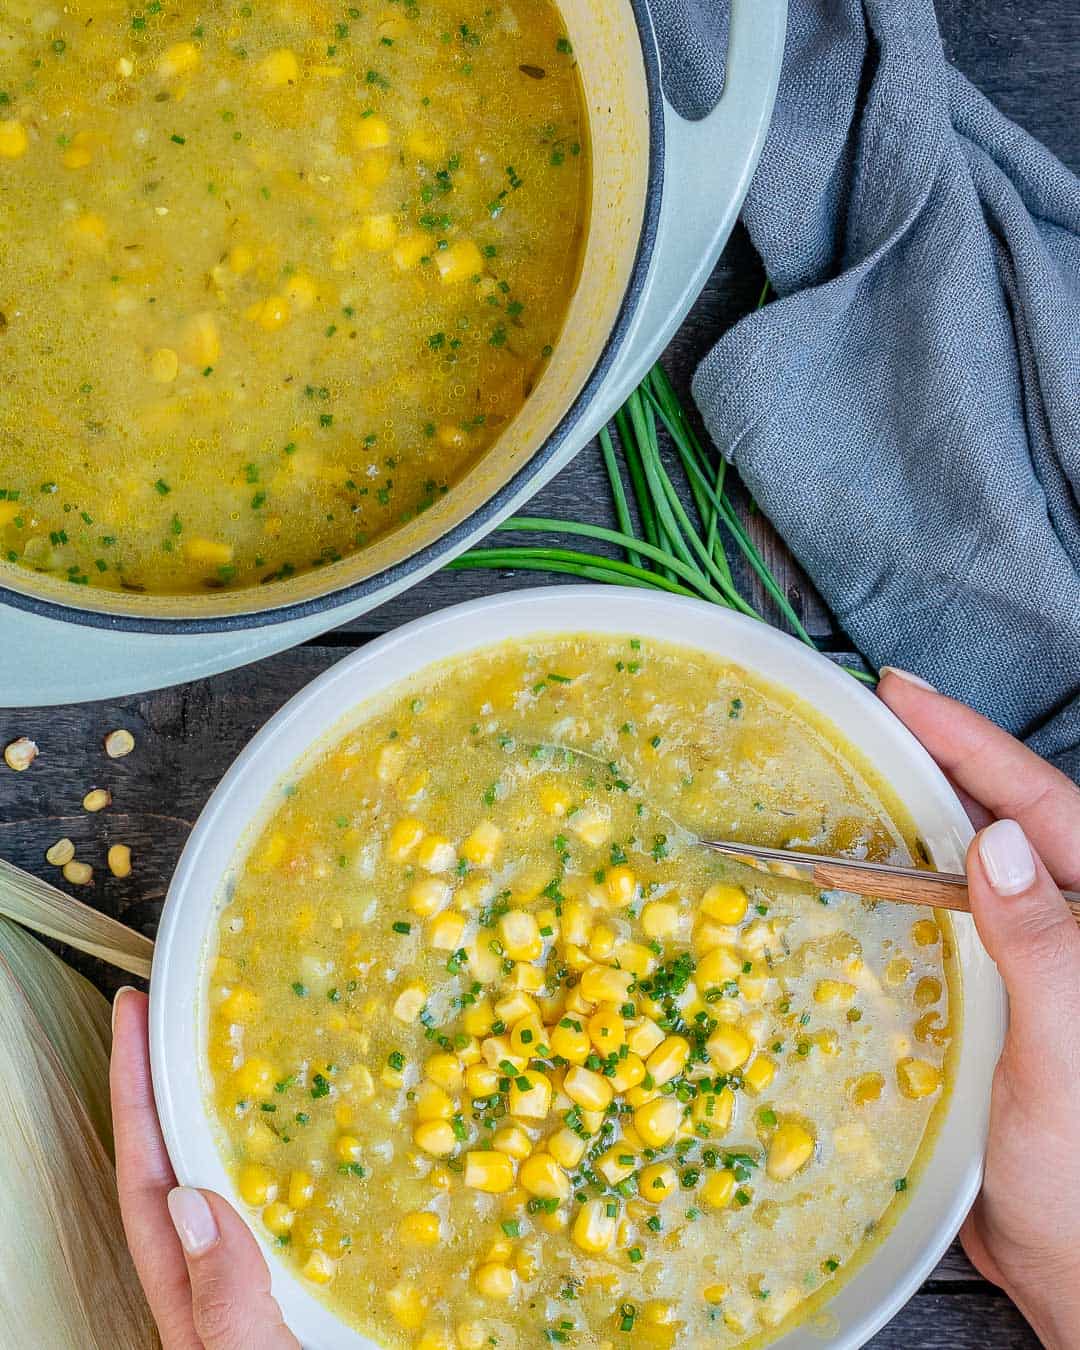 Healthy Summer corn chowder in a bowl